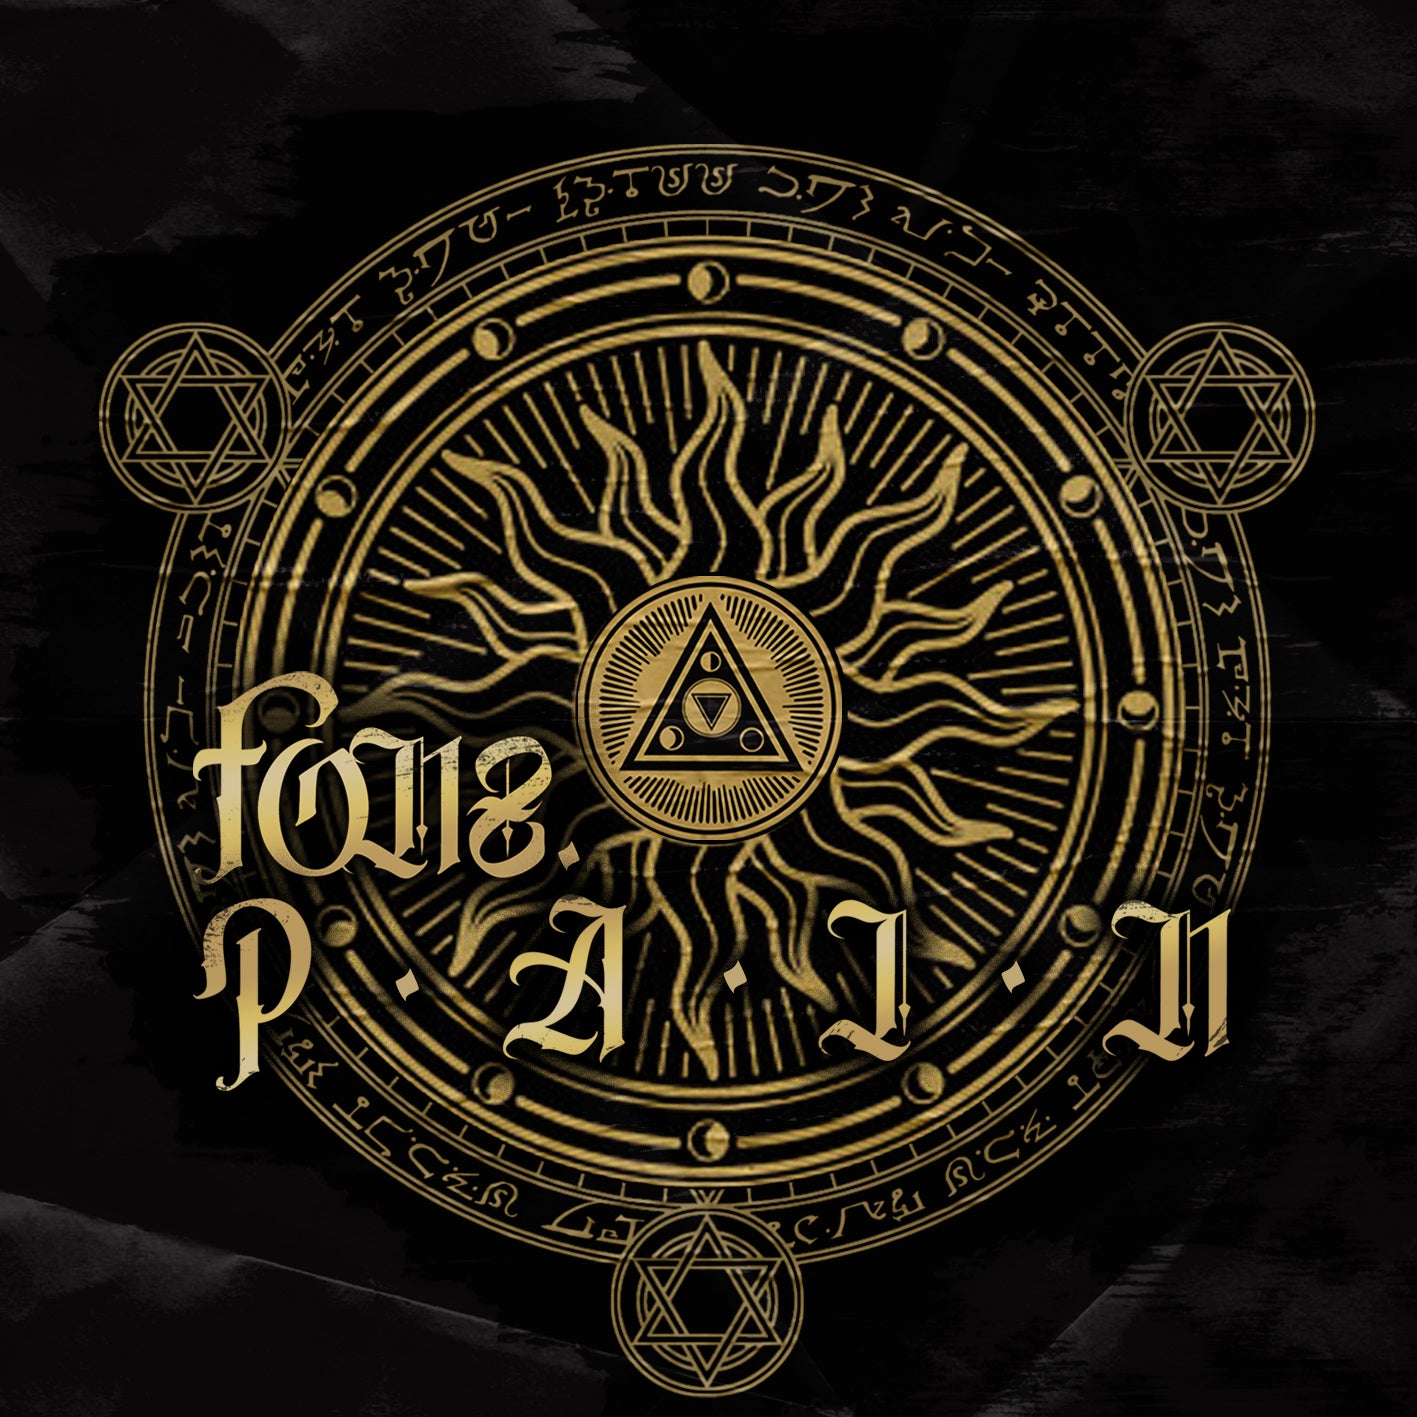 fonzdot - P.A.I.N CD *Signed